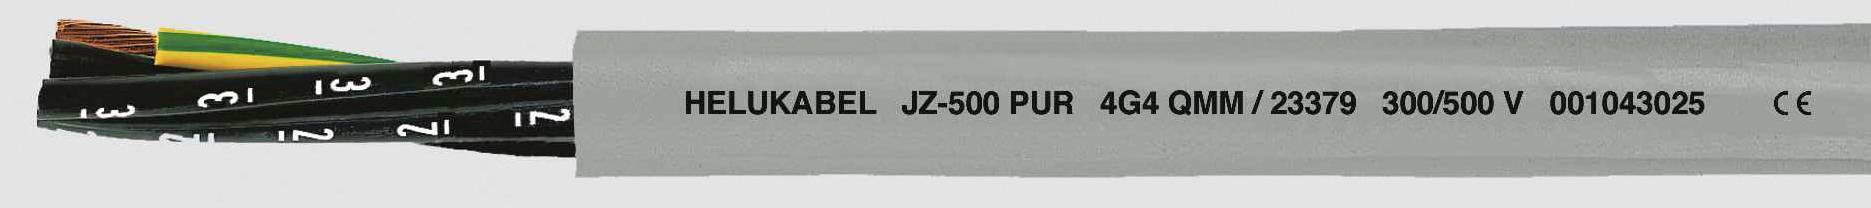 HELUKABEL JZ-500 PUR Steuerleitung 5 G 1.50 mm² Grau 23365-1000 1000 m